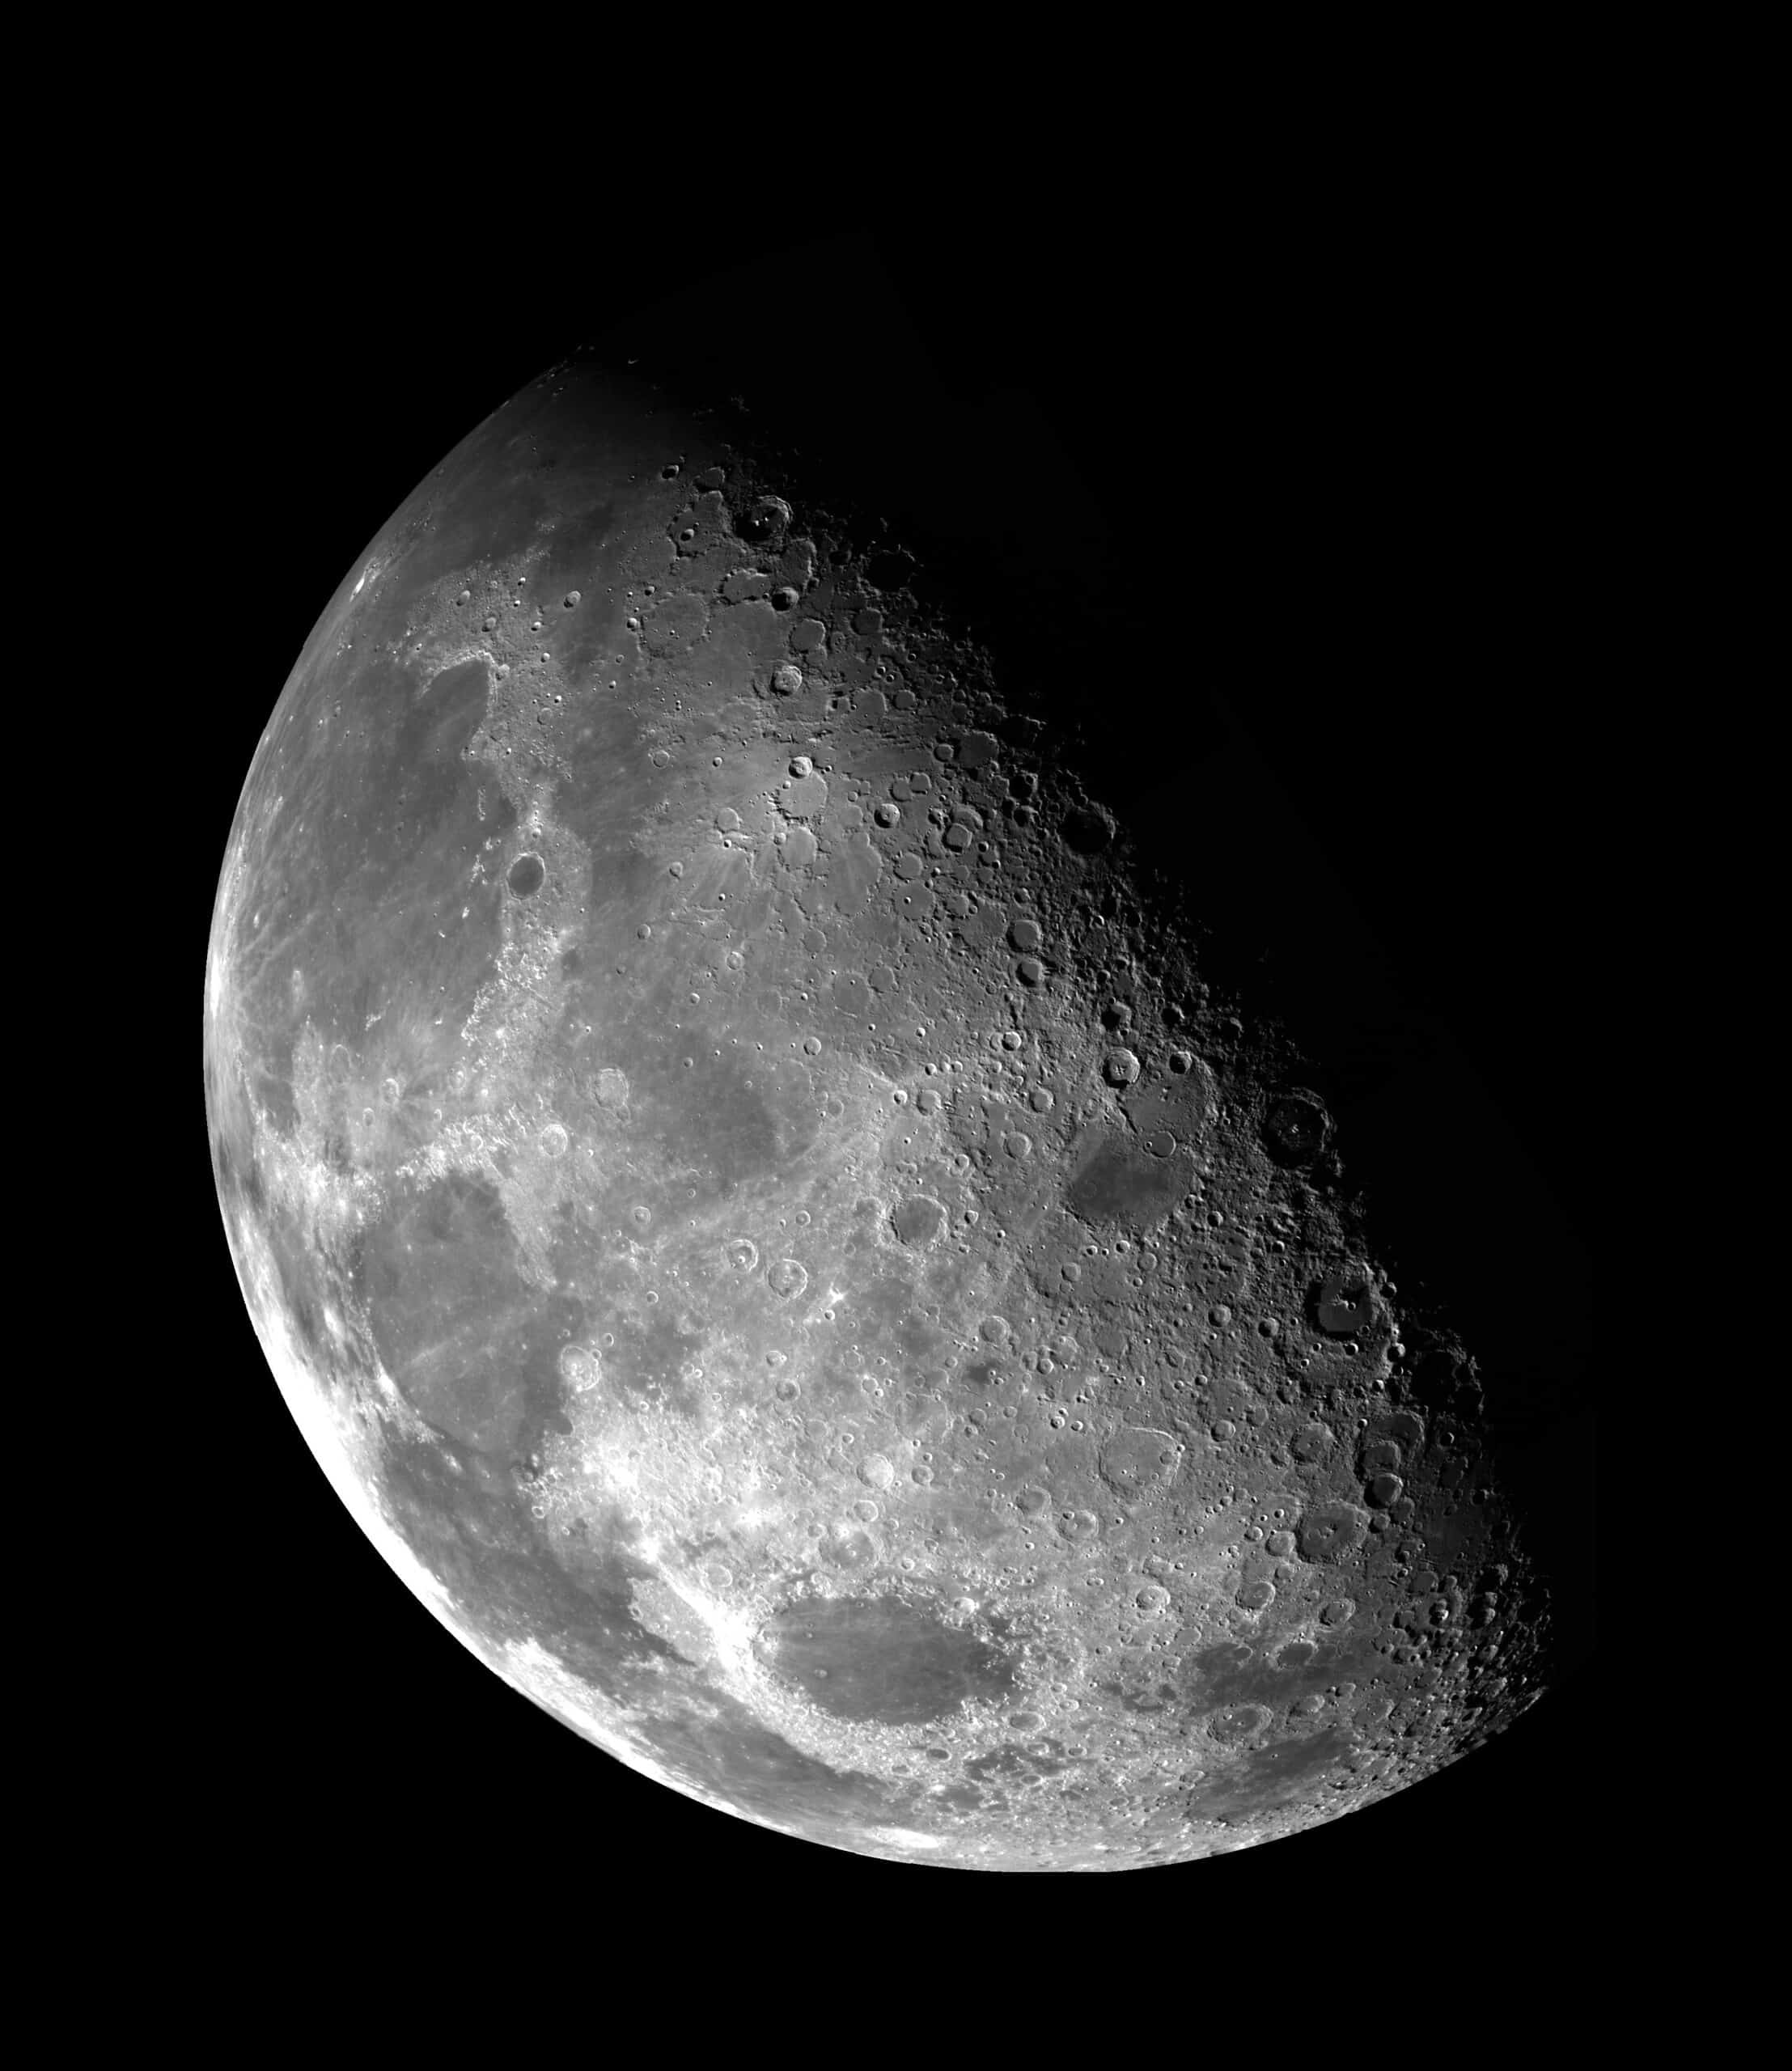 Immagine della Luna scattata da Nasa